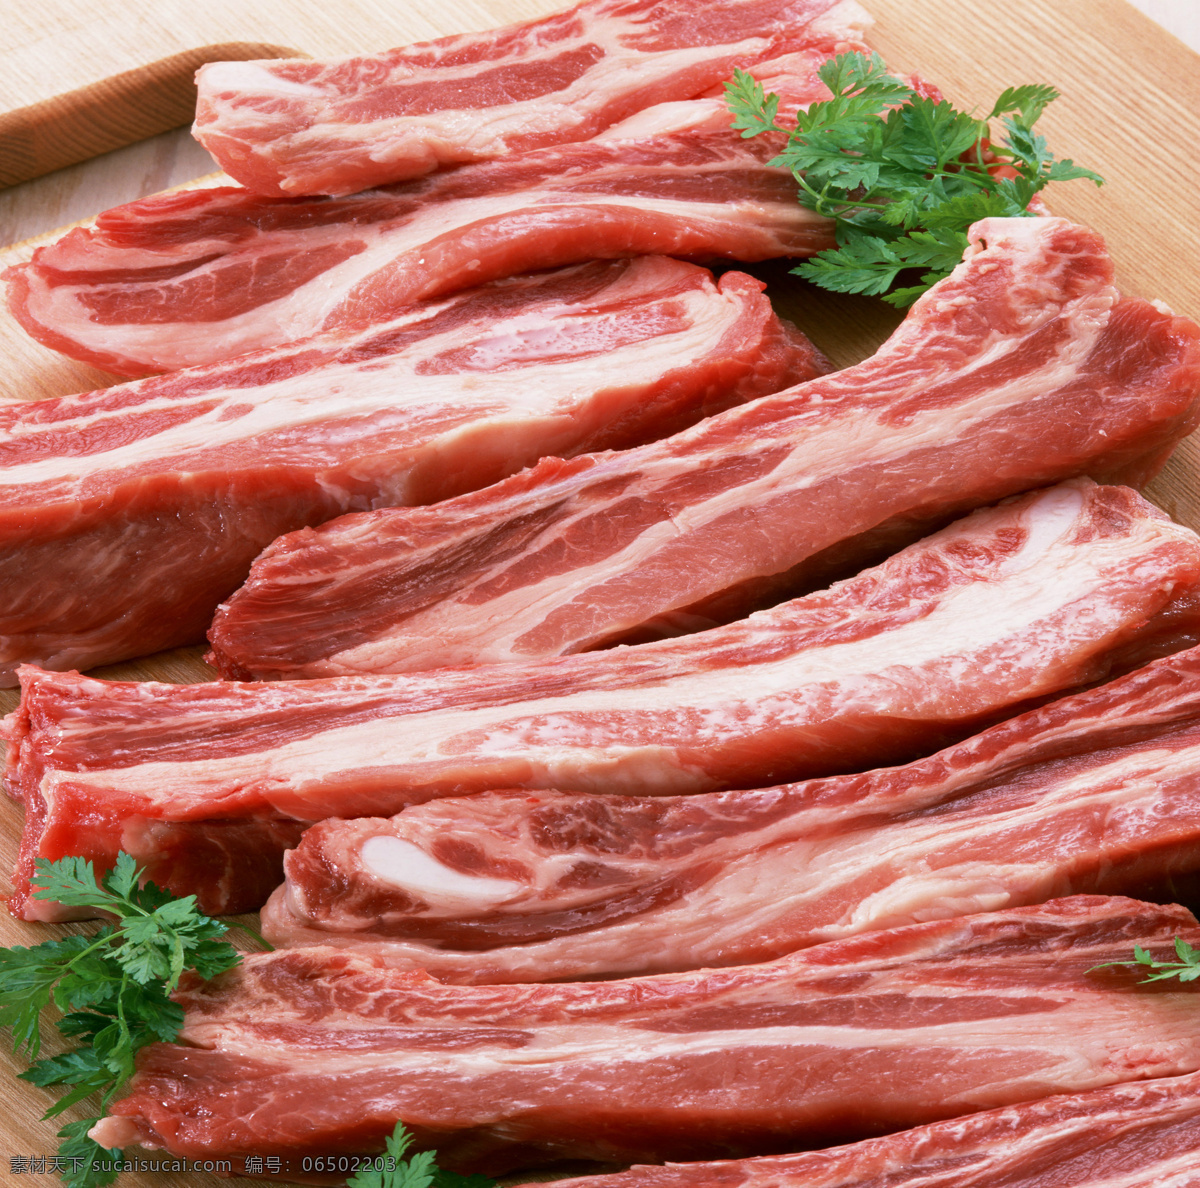 去皮 夹心肉 猪肉 热气肉 红白清晰 新鲜猪肉 肉类食品 食物原料 食物素材摄影 食物原料种种 餐饮美食